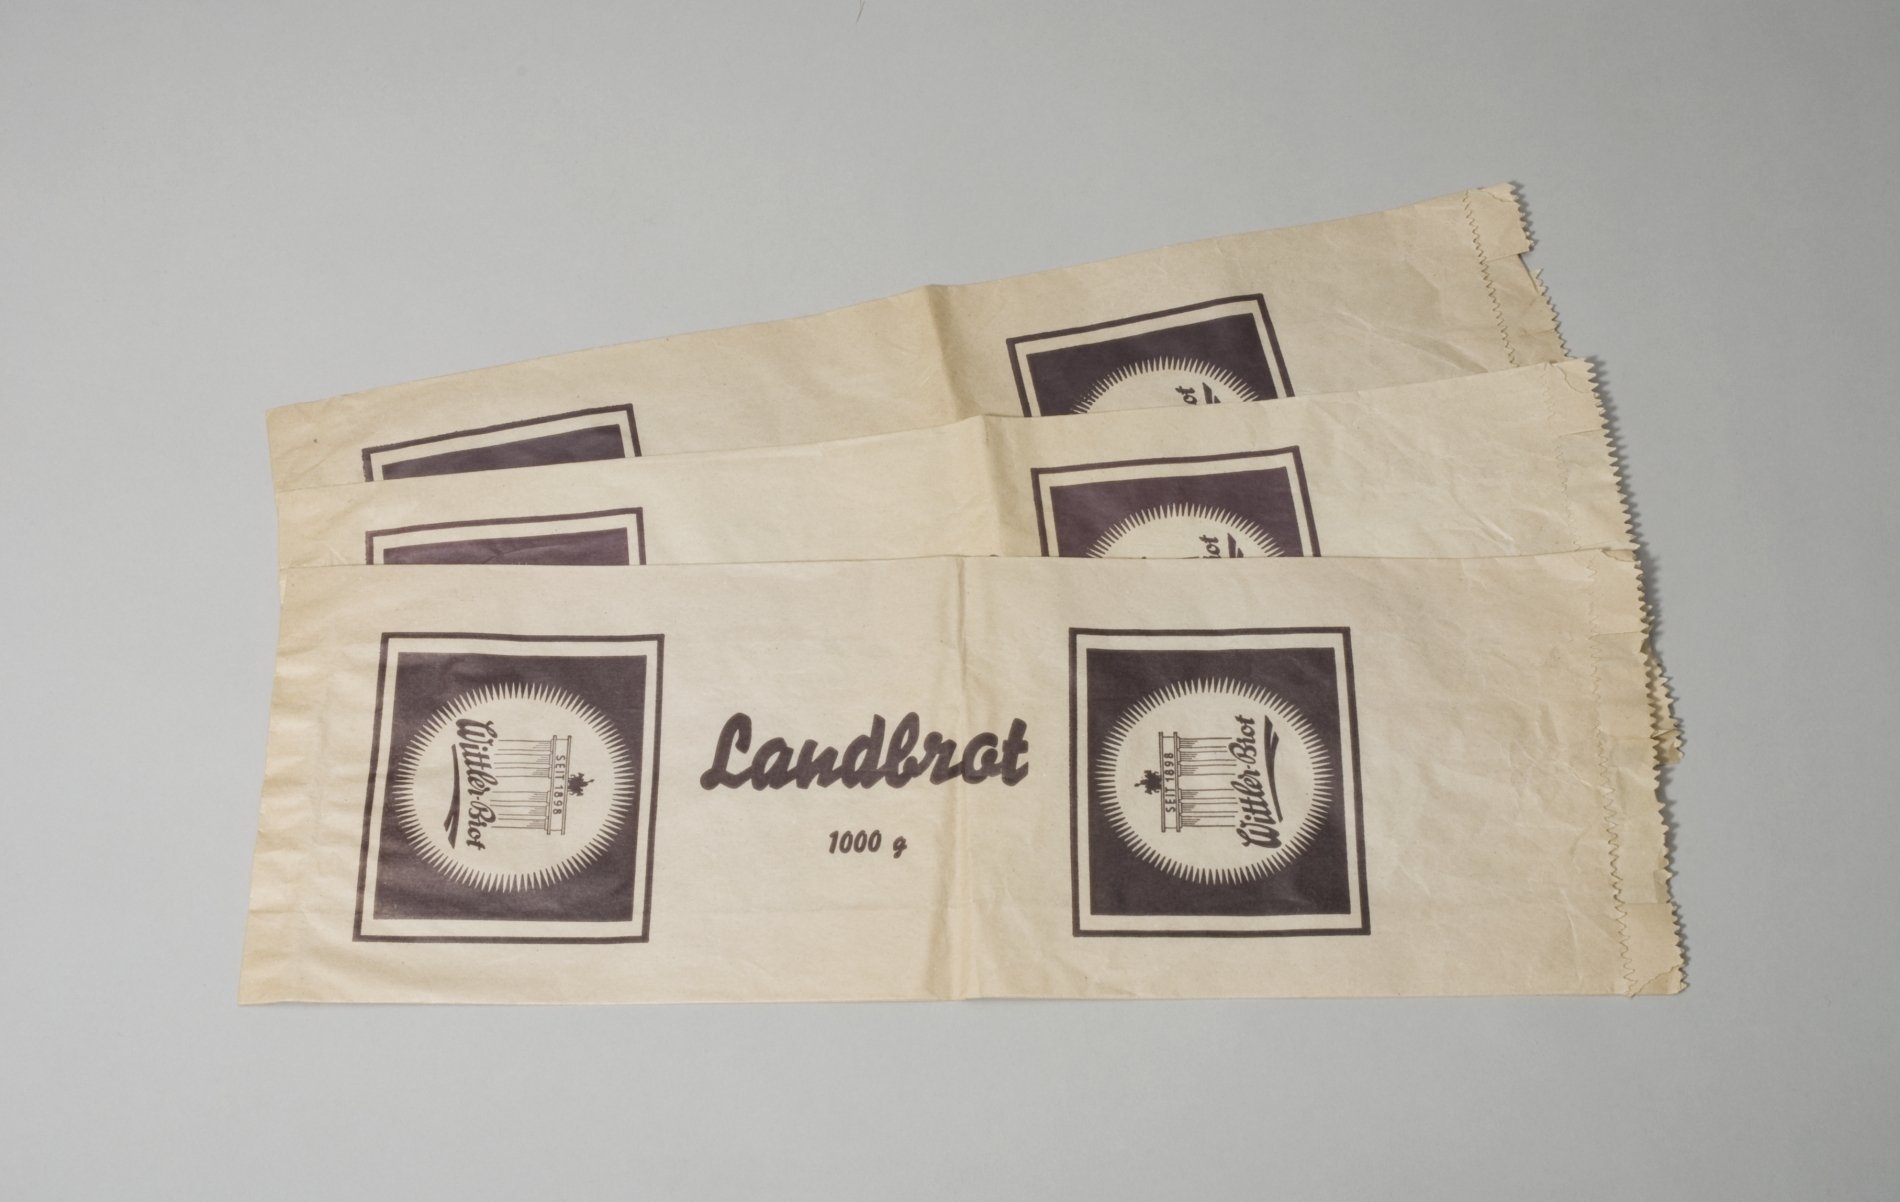 Drei Papiertüten für Landbrot der Firma "Wittler-Brot" (Stiftung Domäne Dahlem - Landgut und Museum, Weiternutzung nur mit Genehmigung des Museums CC BY-NC-SA)